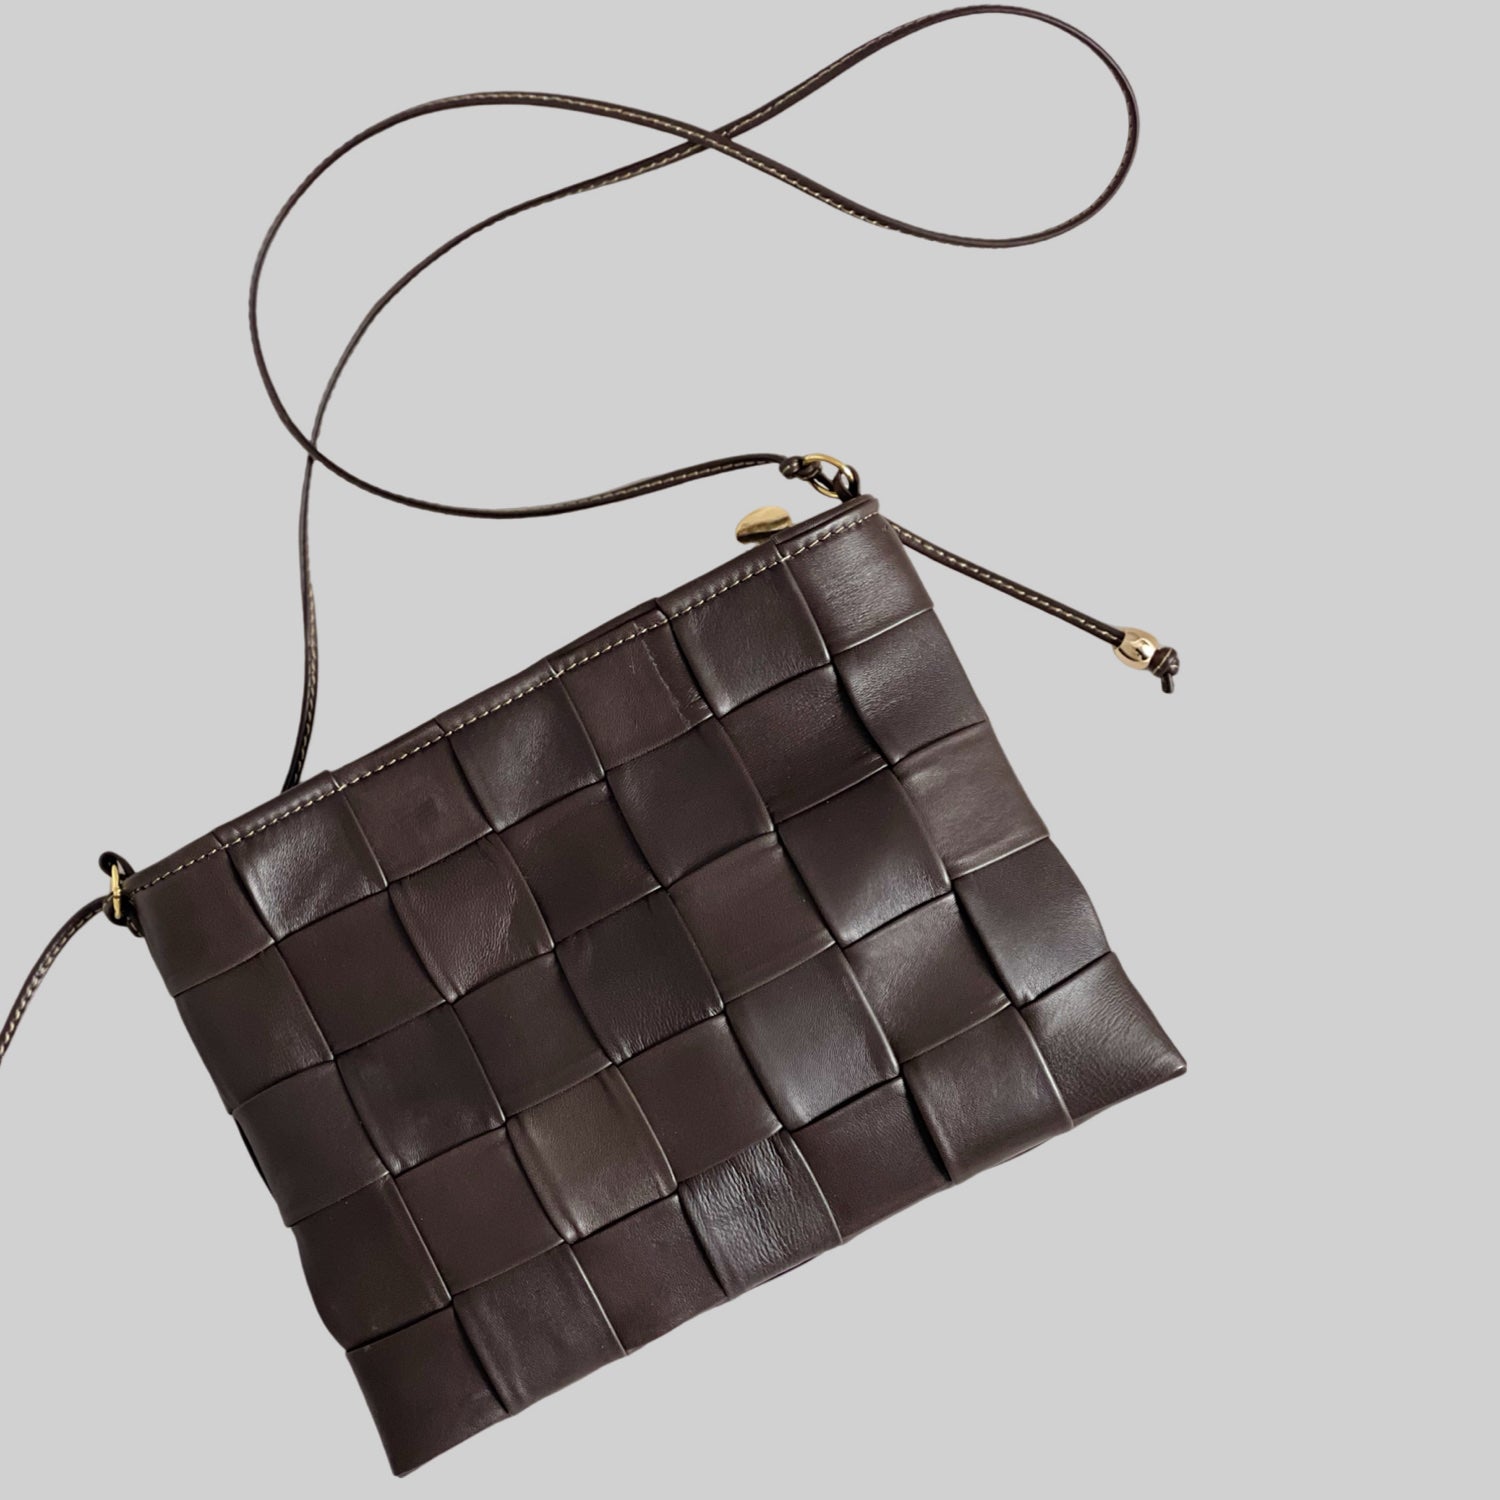 Ribichini Square Clutch i fargen chocolate: Elegant og kompakt design med store, flettede ruter. Håndlaget kvalitet og høykvalitetsmaterialer.